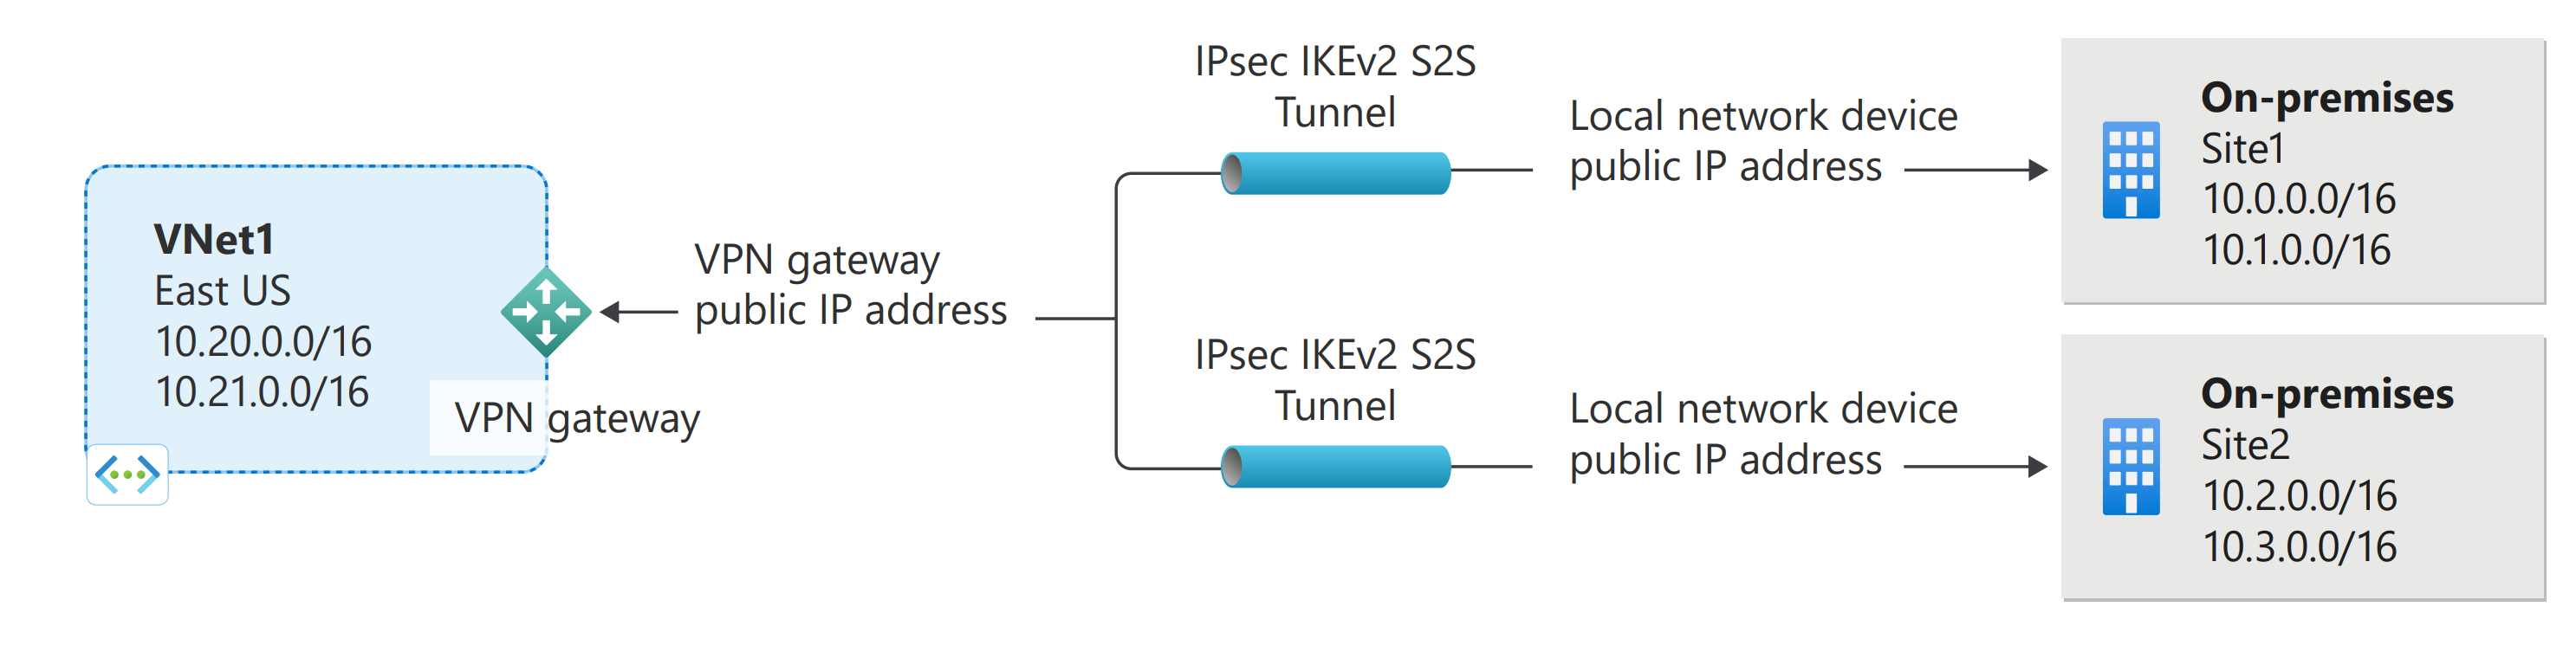 複数サイト間 Azure VPN Gateway 接続を示す図。